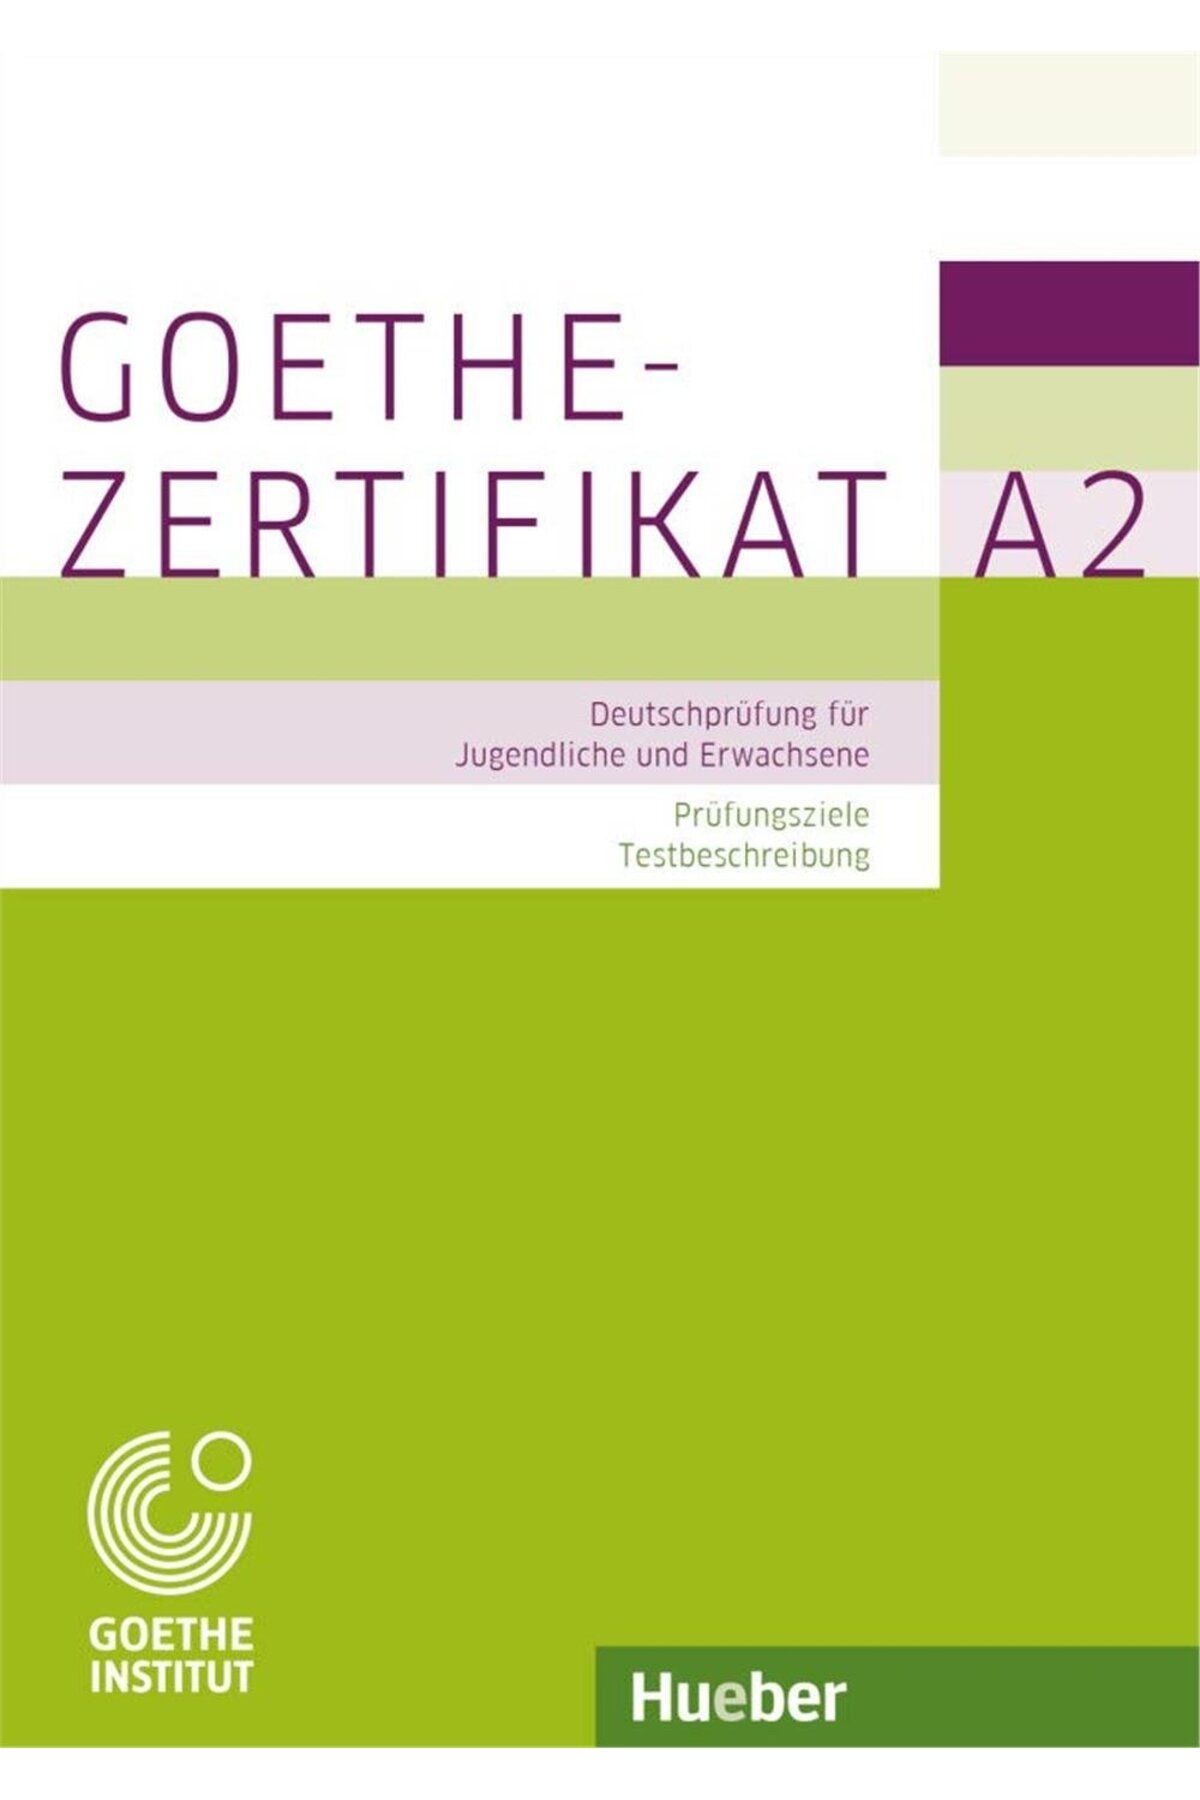 Hueber Yayınları Goethe-Zertifikat A2 - Deutschprufung fur Jugendliche und Erwachsene